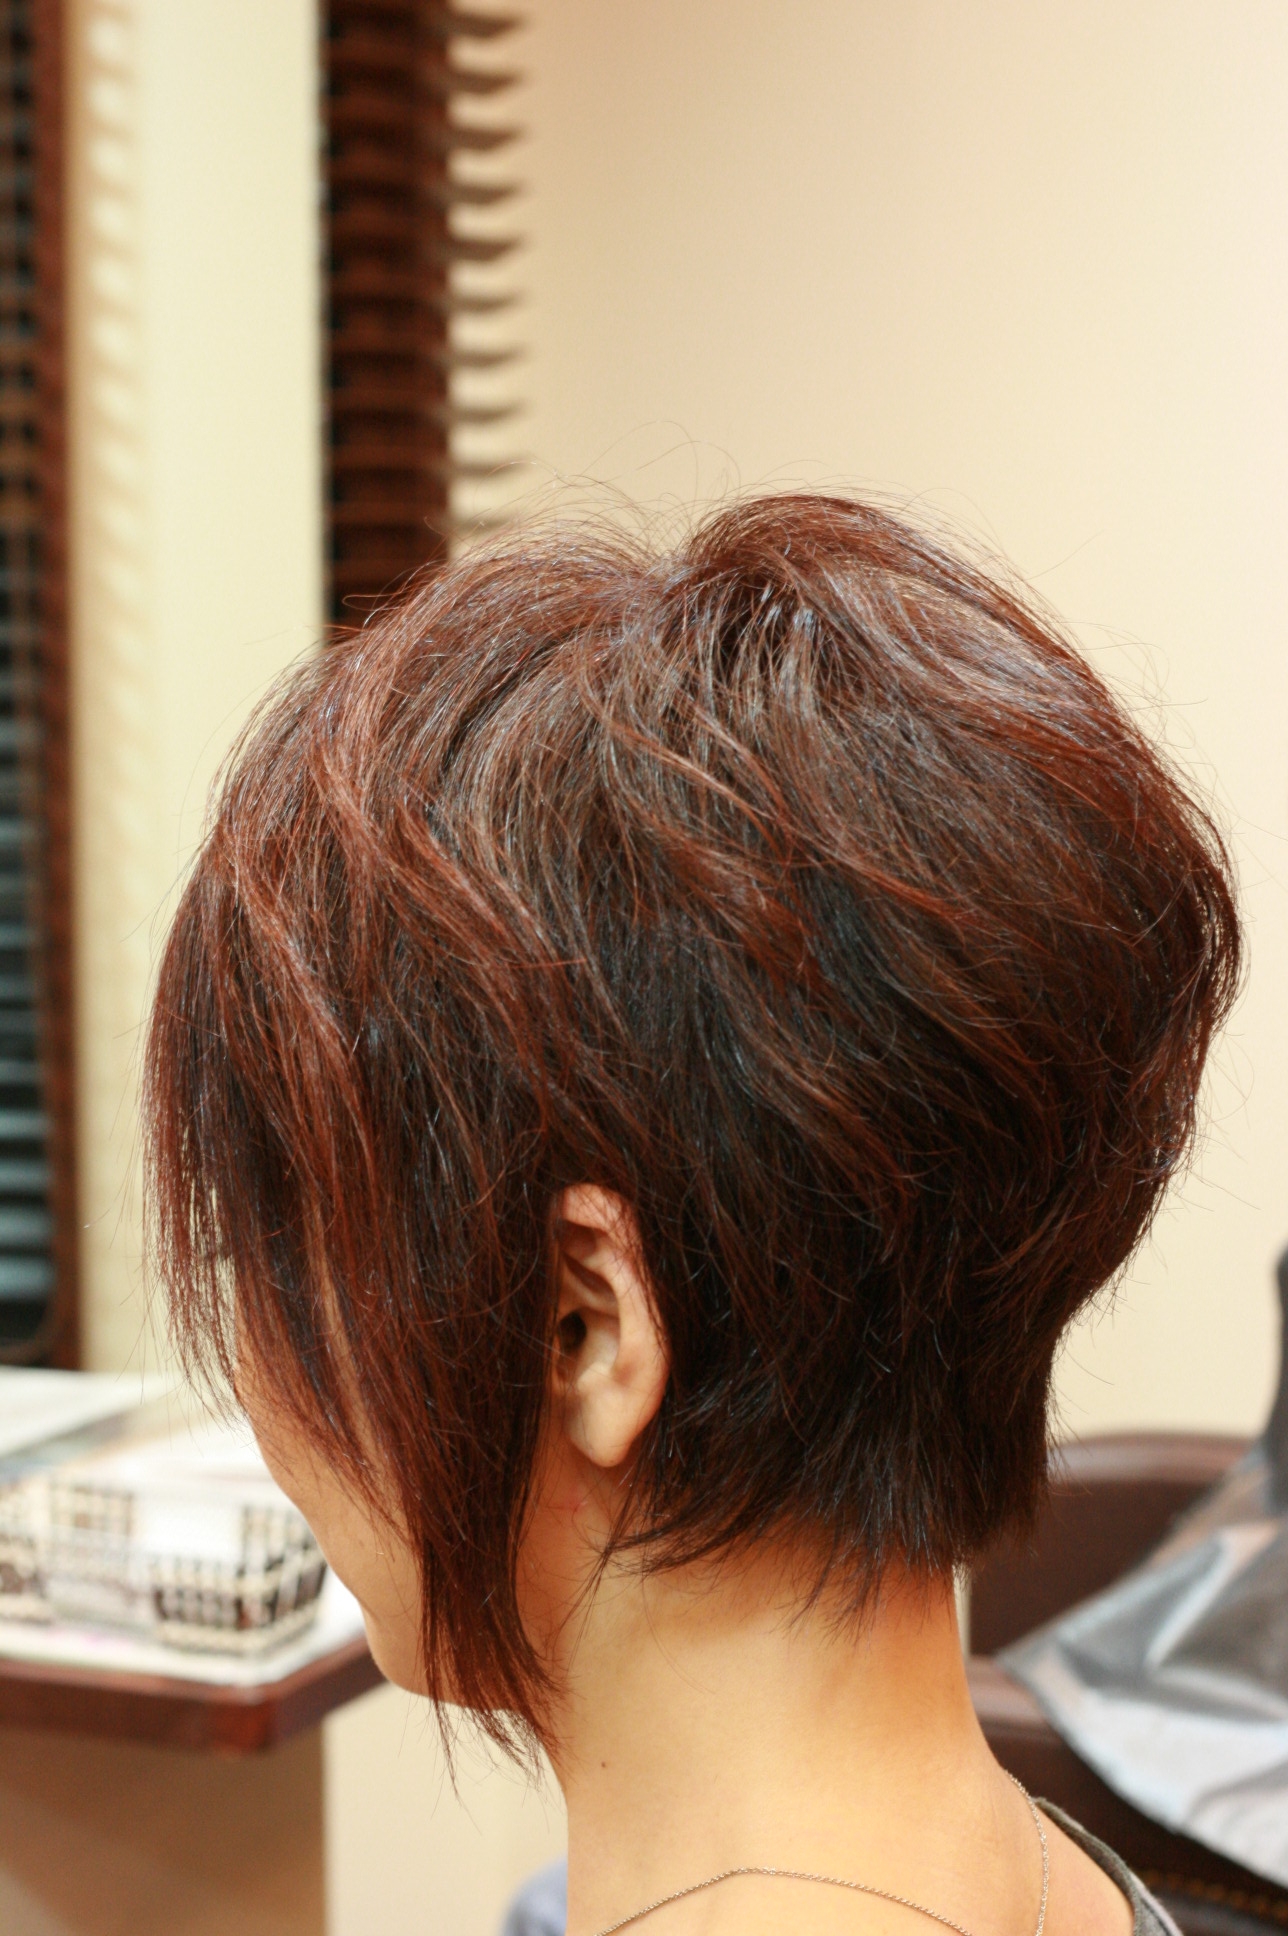 渡辺満里奈さんの髪型 ショートヘアスタイル の巻